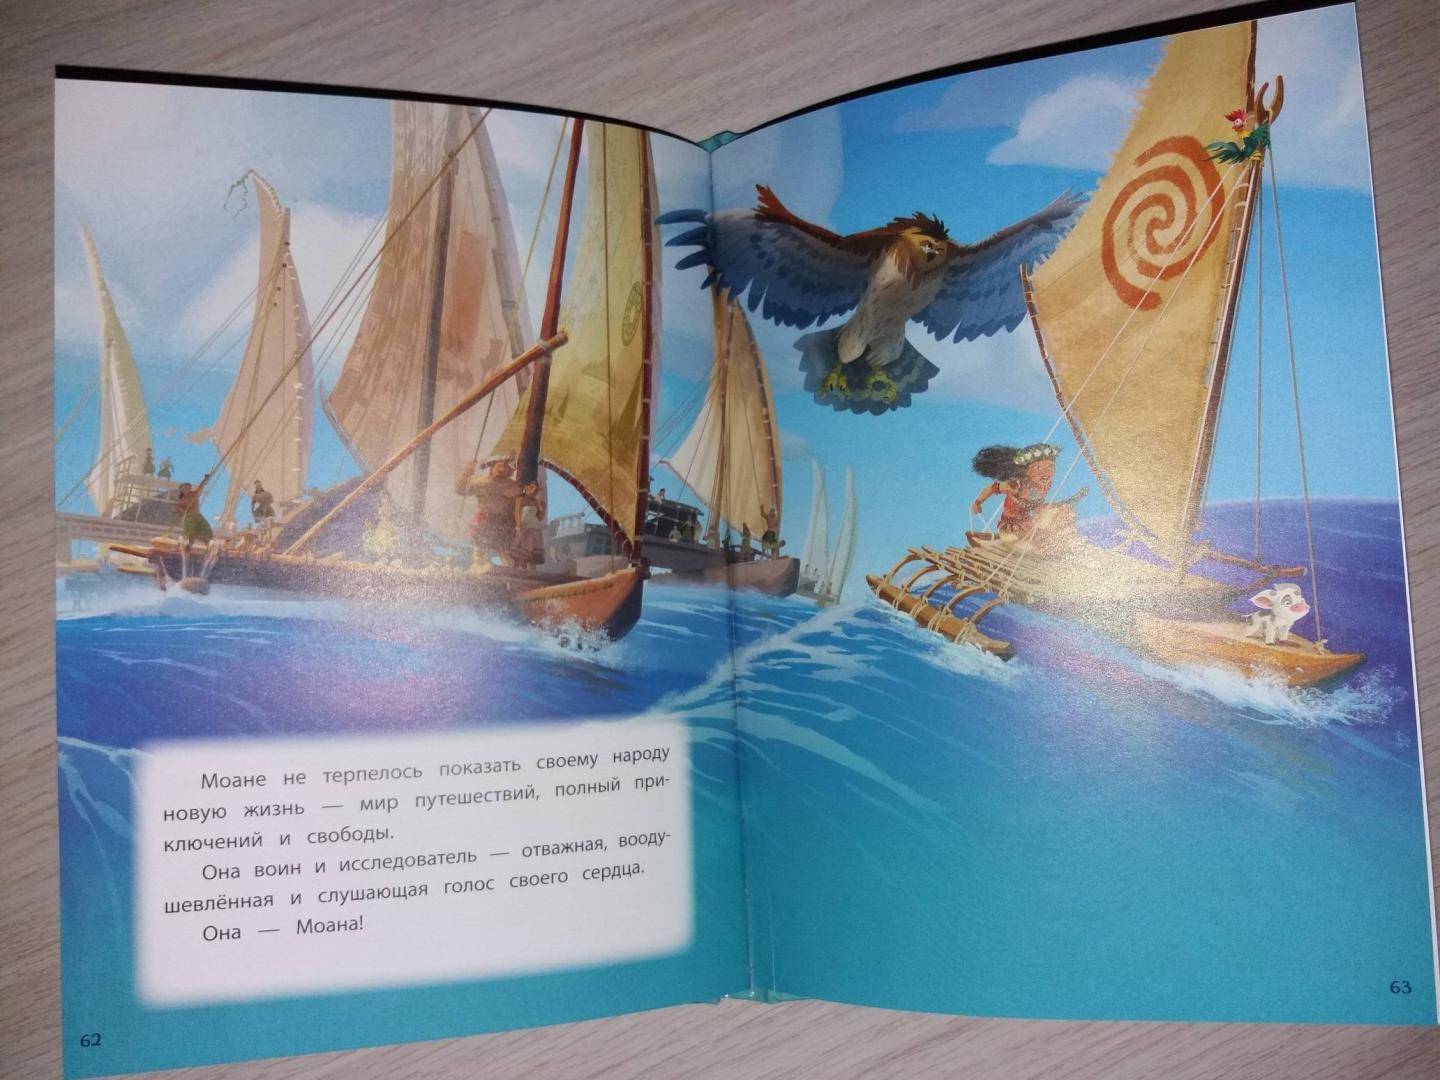 Купить или взять почитать книгу Моана. Через океан. Книга для чтения с цветными картинками Неизвестный автор Кипр Пафос Лимассол